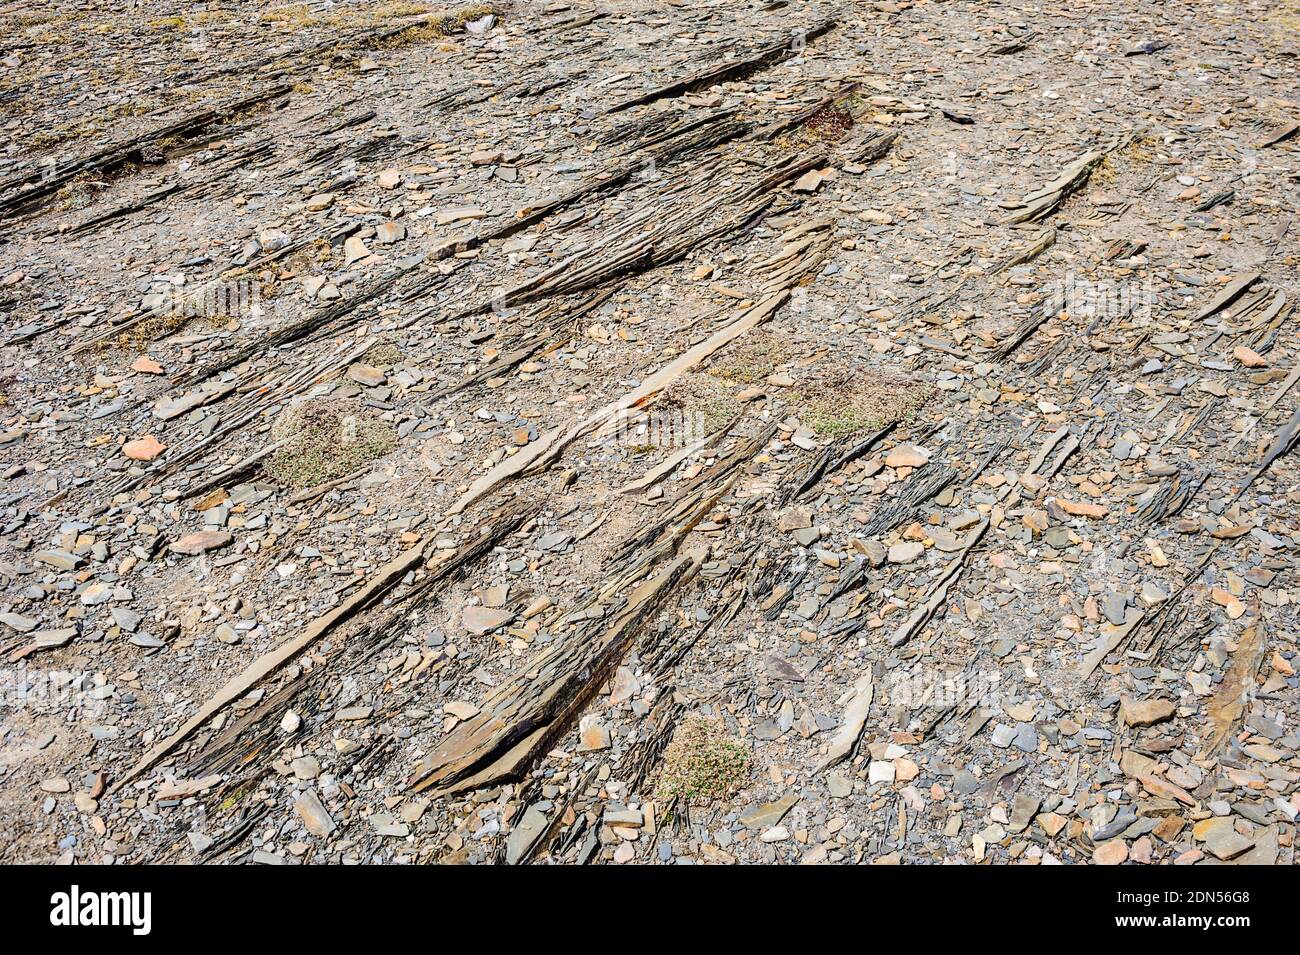 Résumé gros plan de roches parallèles et de gravier en couches sur le sol. Banque D'Images